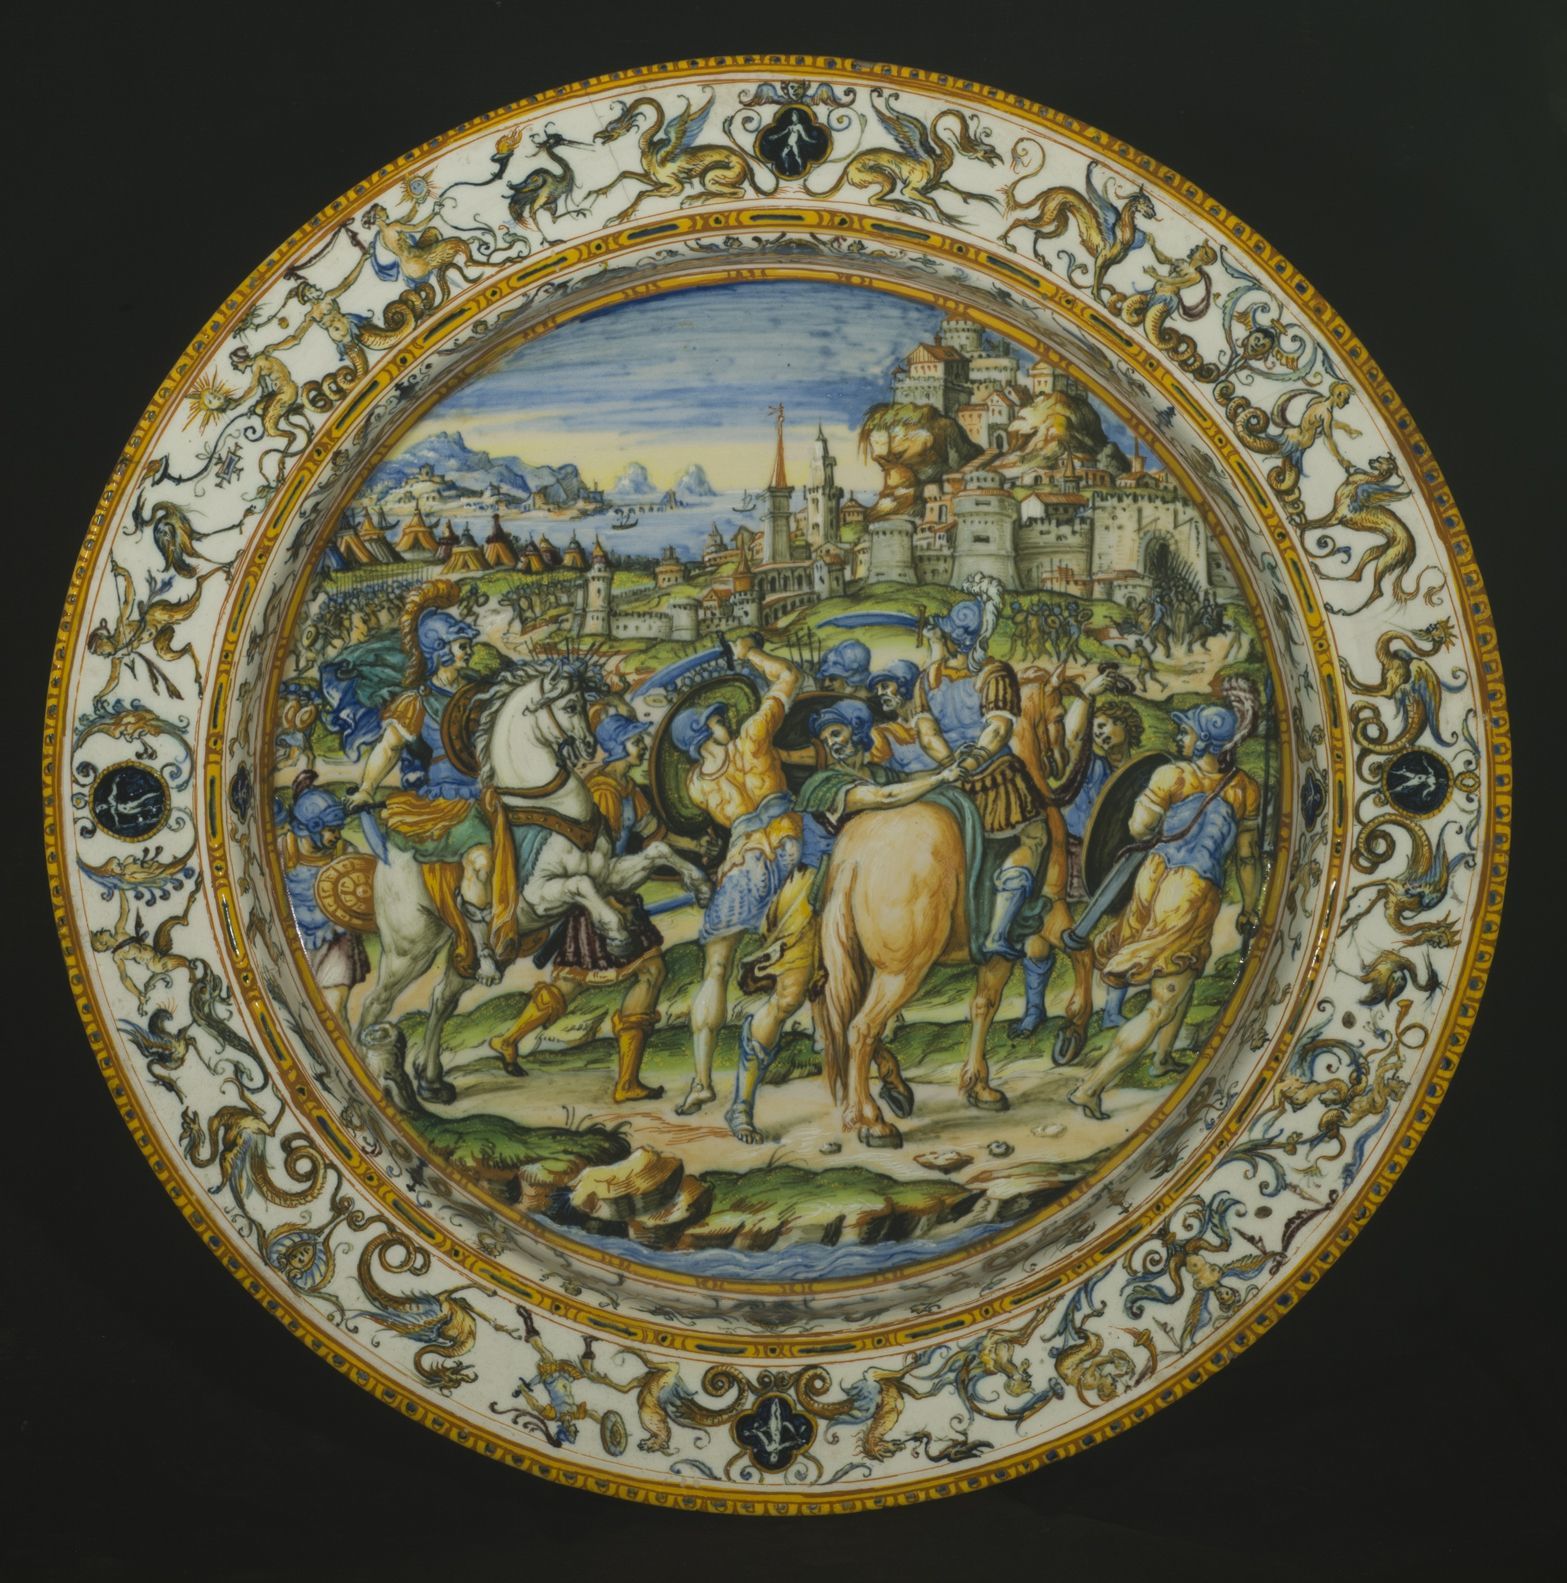 ウルビーノ窯、パタナッツィ工房	《市民を救うカエサル》が描かれた大皿 1580–90年頃 バルジェッロ美術館